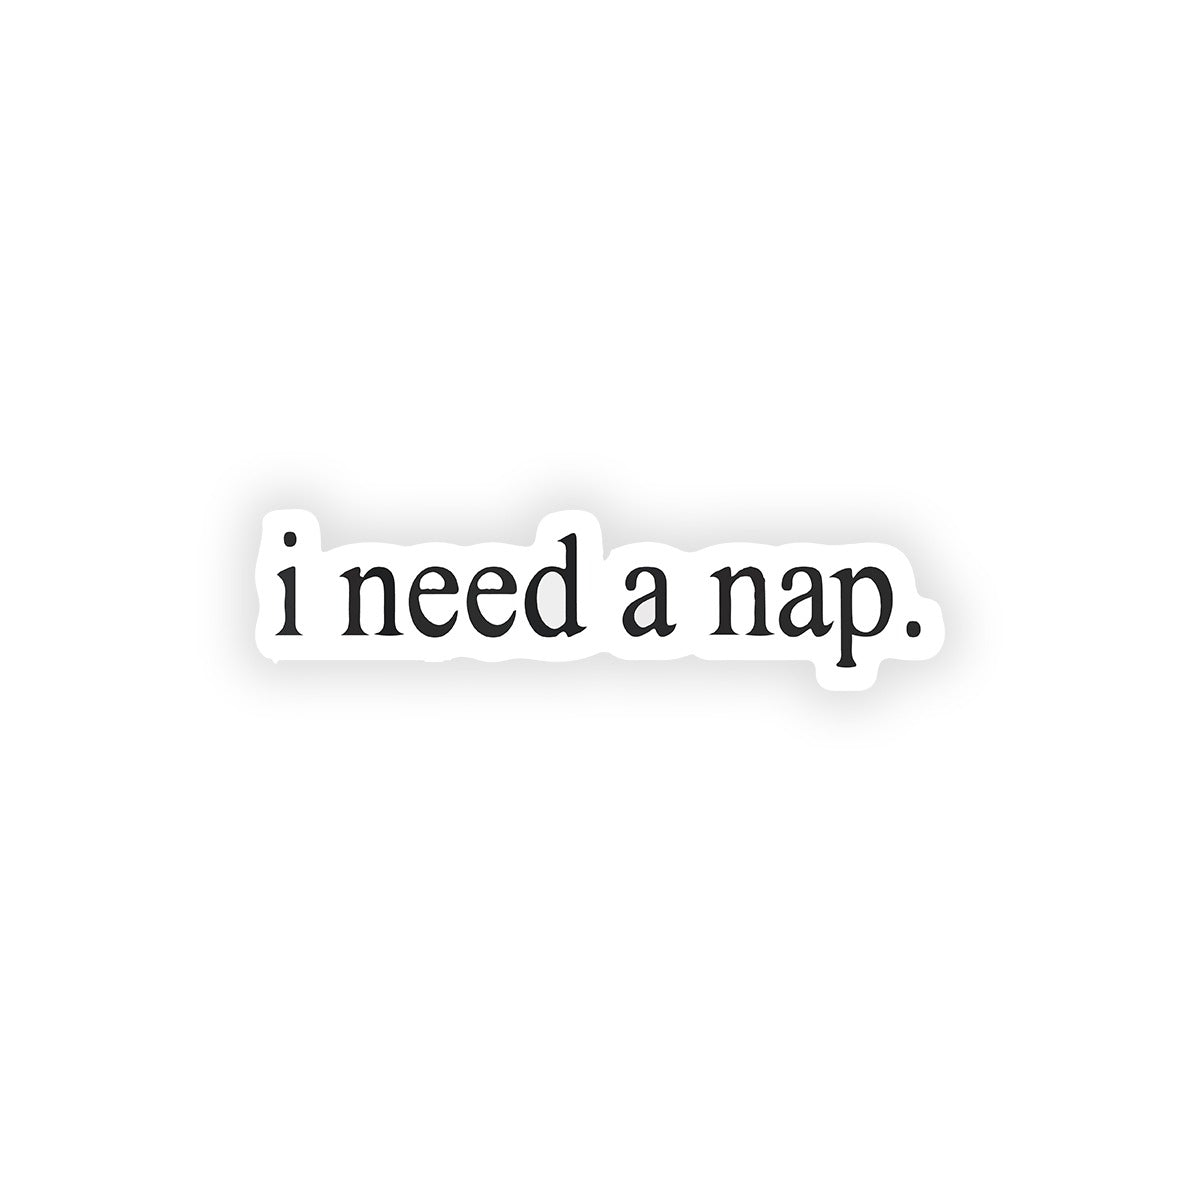 I need a nap